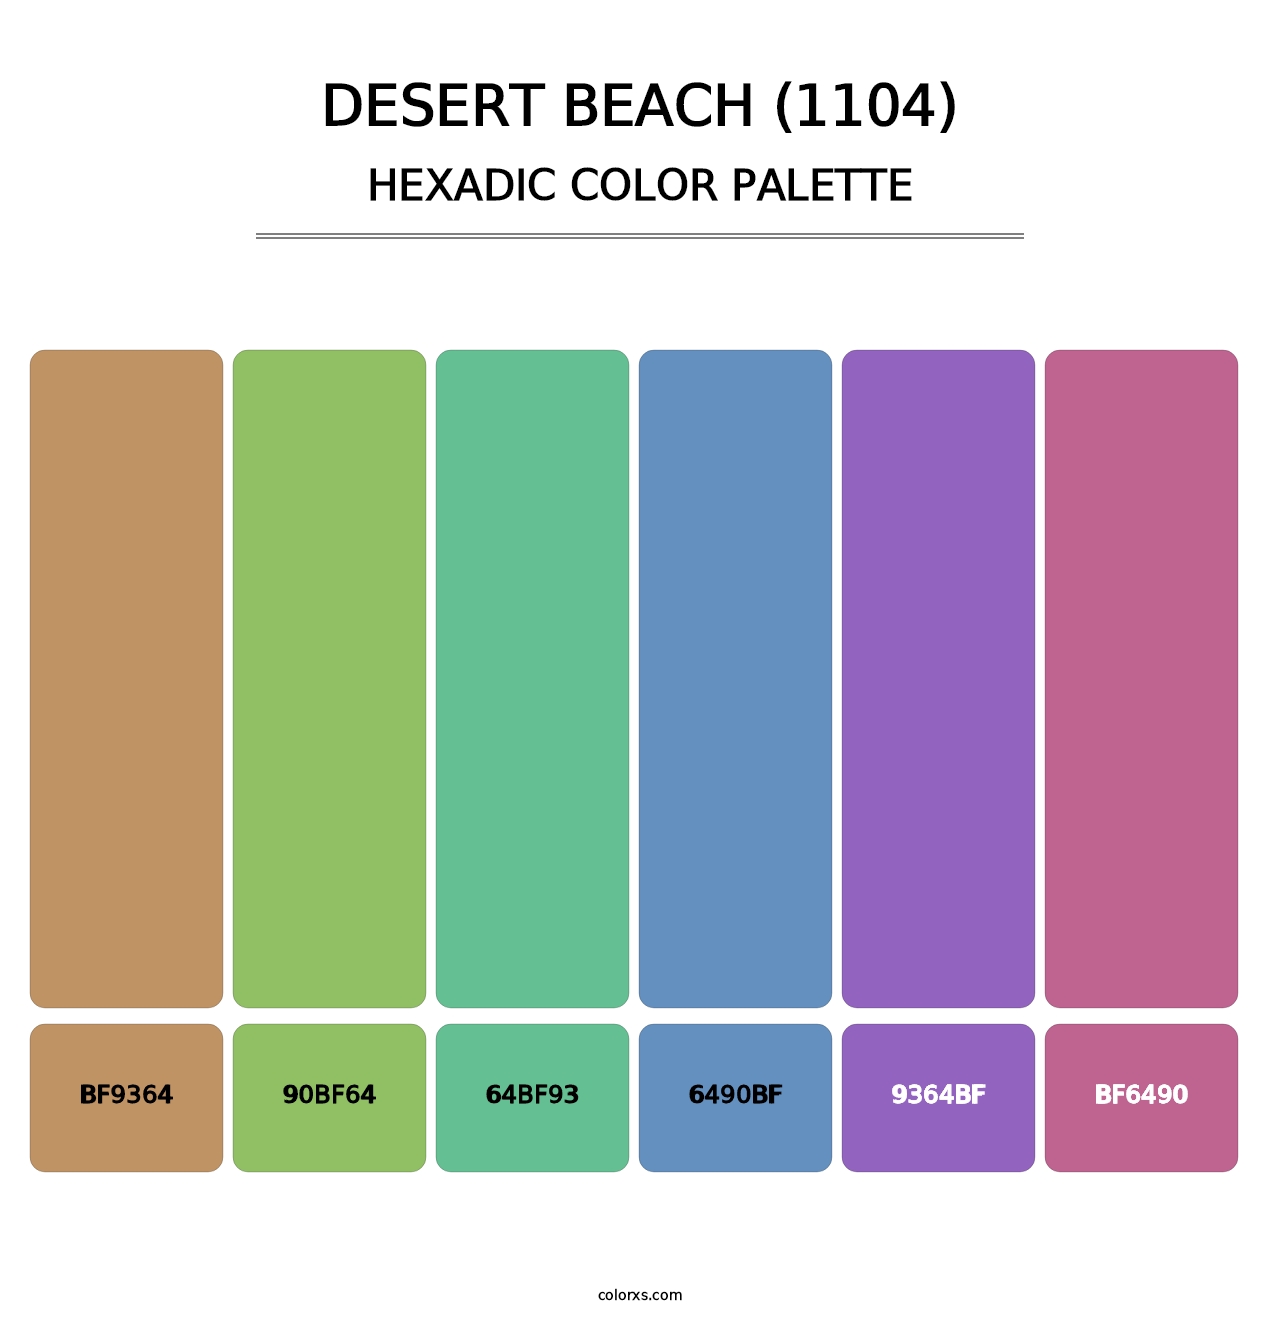 Desert Beach (1104) - Hexadic Color Palette